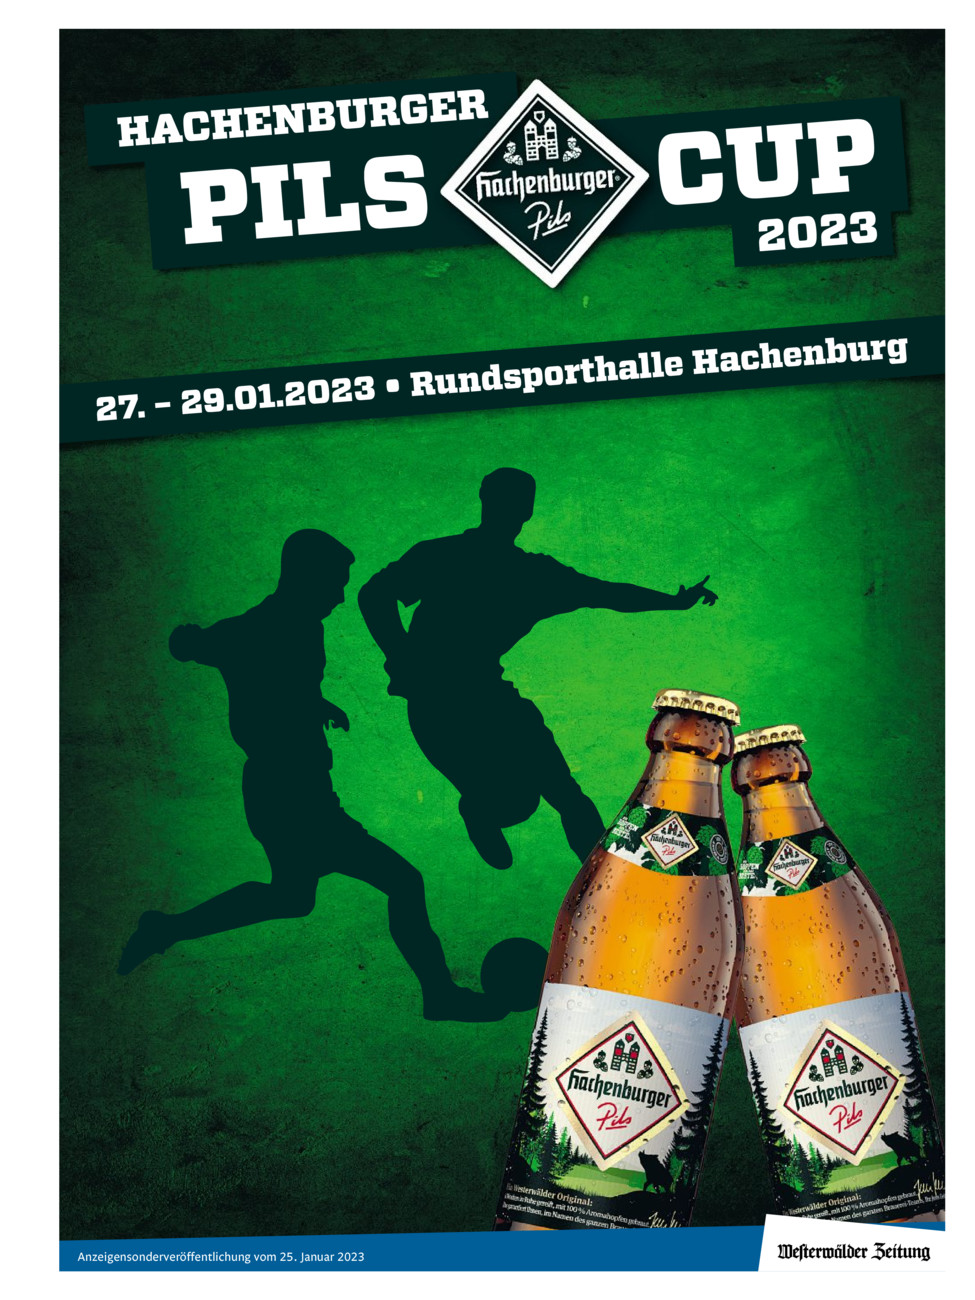 Hachenburger Pils Cup 2023